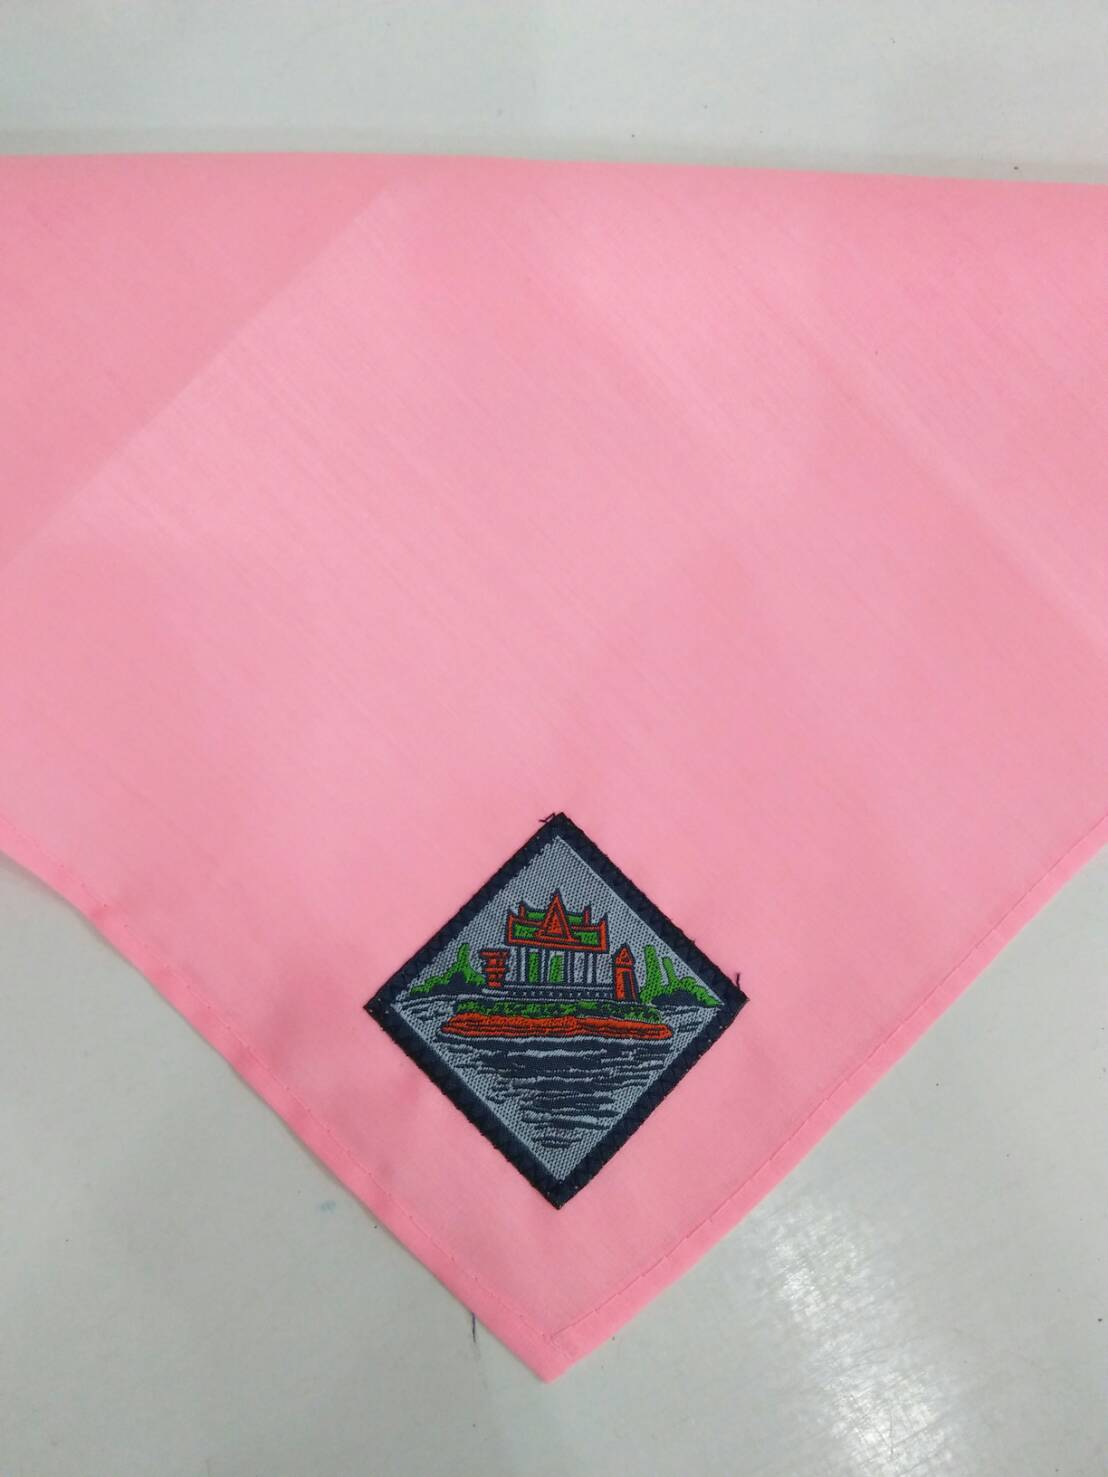 ผ้าพันคอชมพู สีชมพู ขนาดเล็ก ติดตราร้อยเอ็ด (3139000025908)